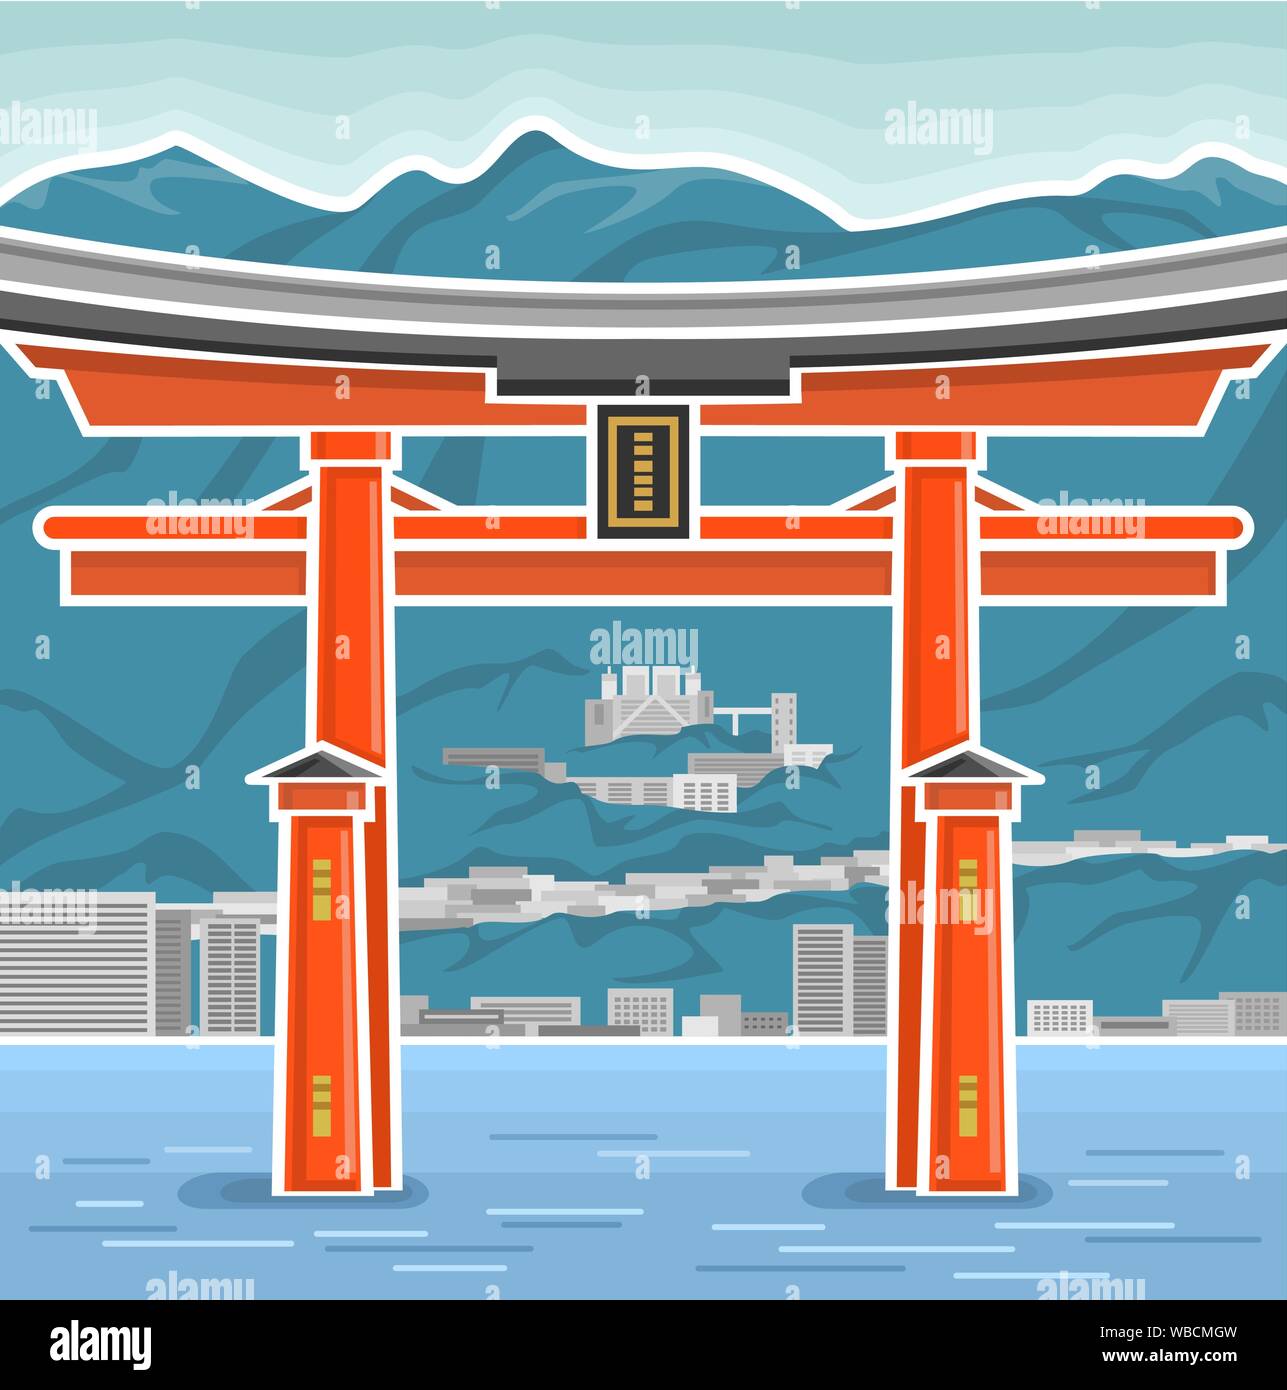 L'affiche de vecteur symbole avec le Japon - japonais Torii, composition du monument national d'Itsukushima torii gate sacré sur fond de mer et montagne Illustration de Vecteur